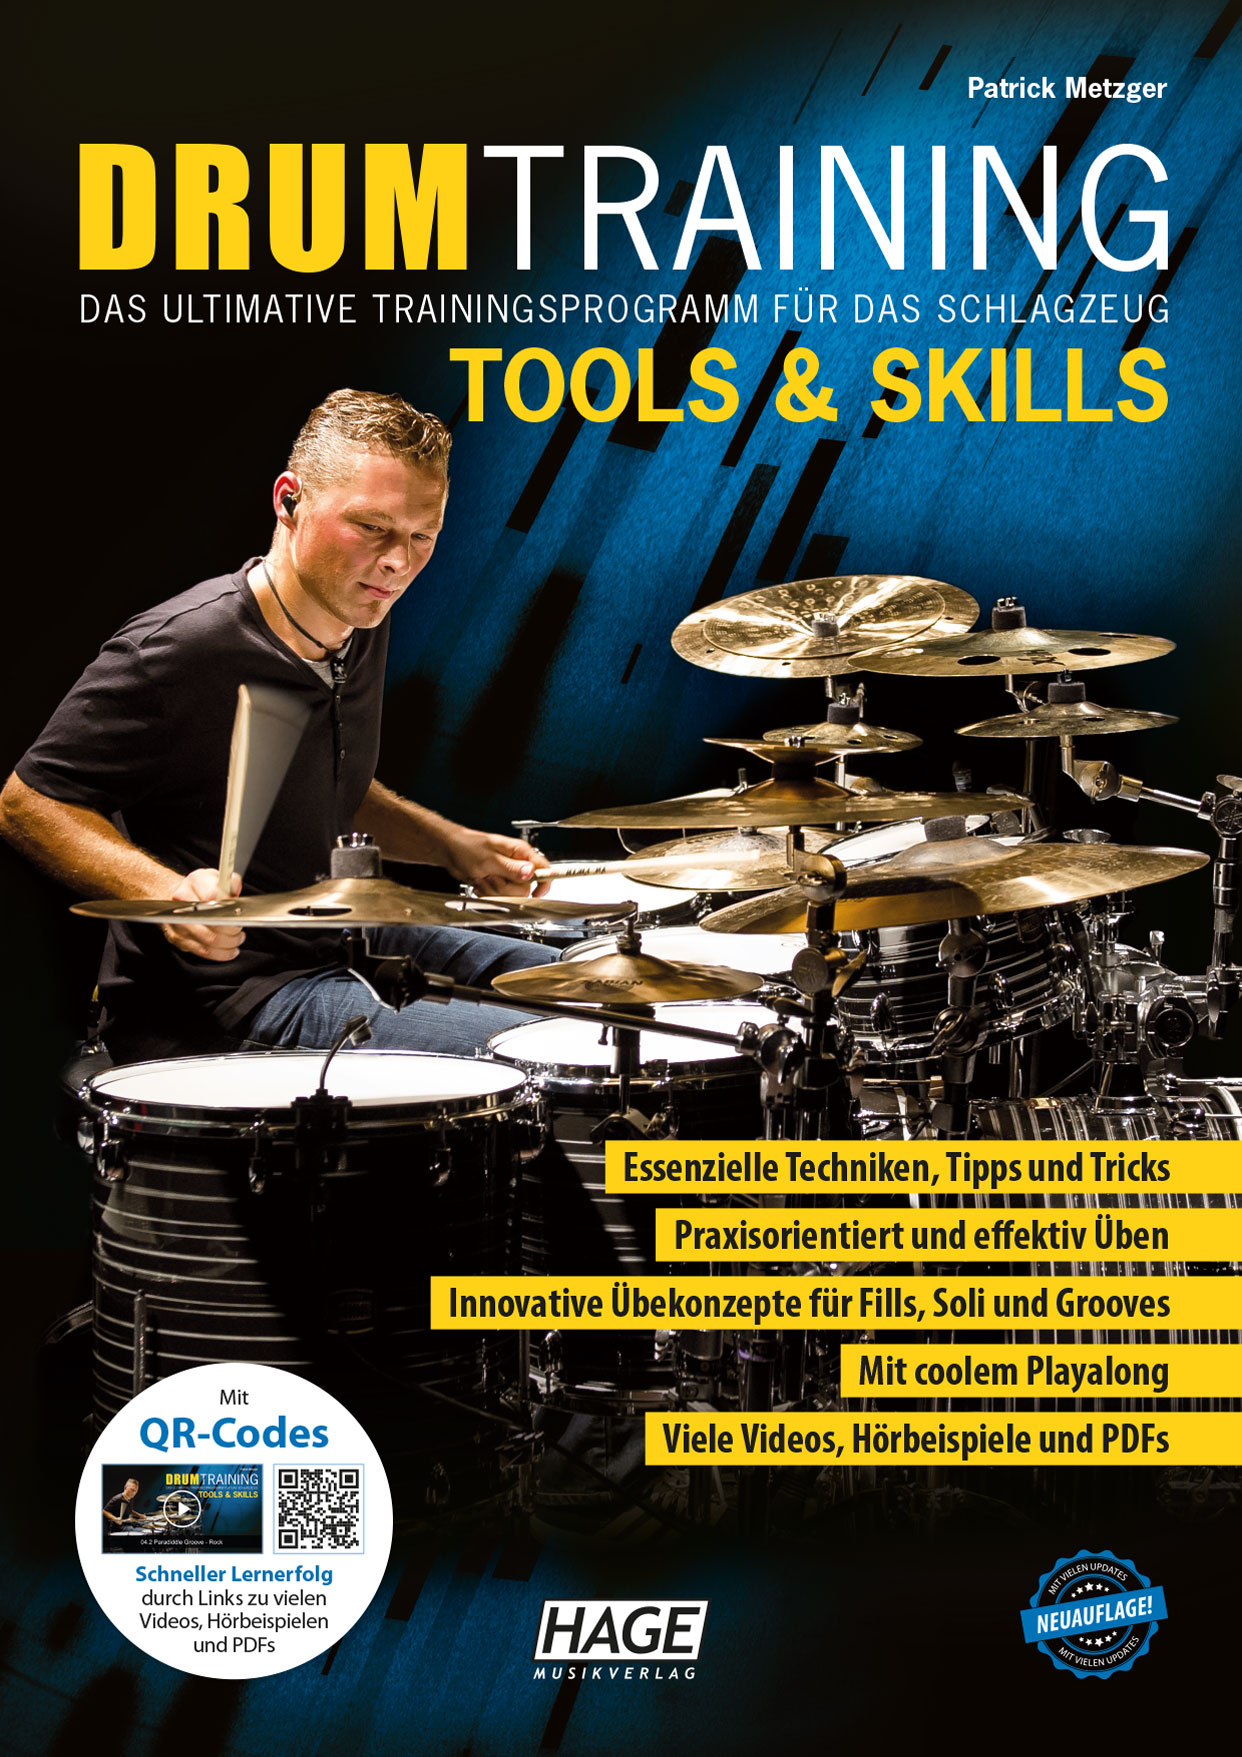 Drum Training Tools & Skills (mit QR-Codes)